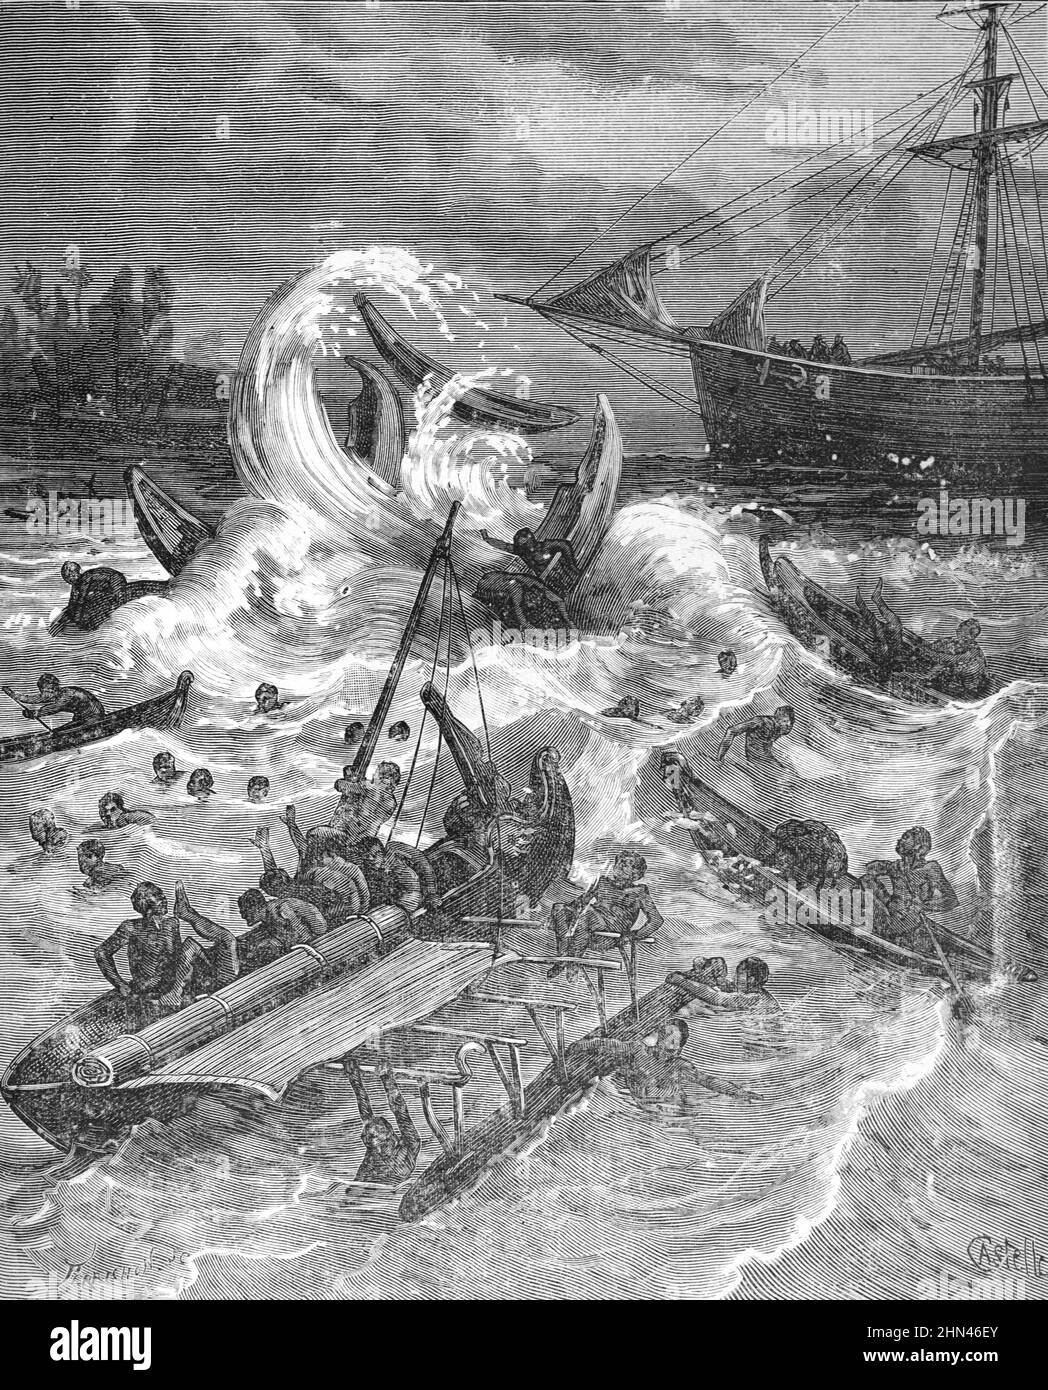 Tempête ou tsunami au large de la Nouvelle-Guinée. Illustration ancienne ou gravure 1881. (Castelli) Banque D'Images